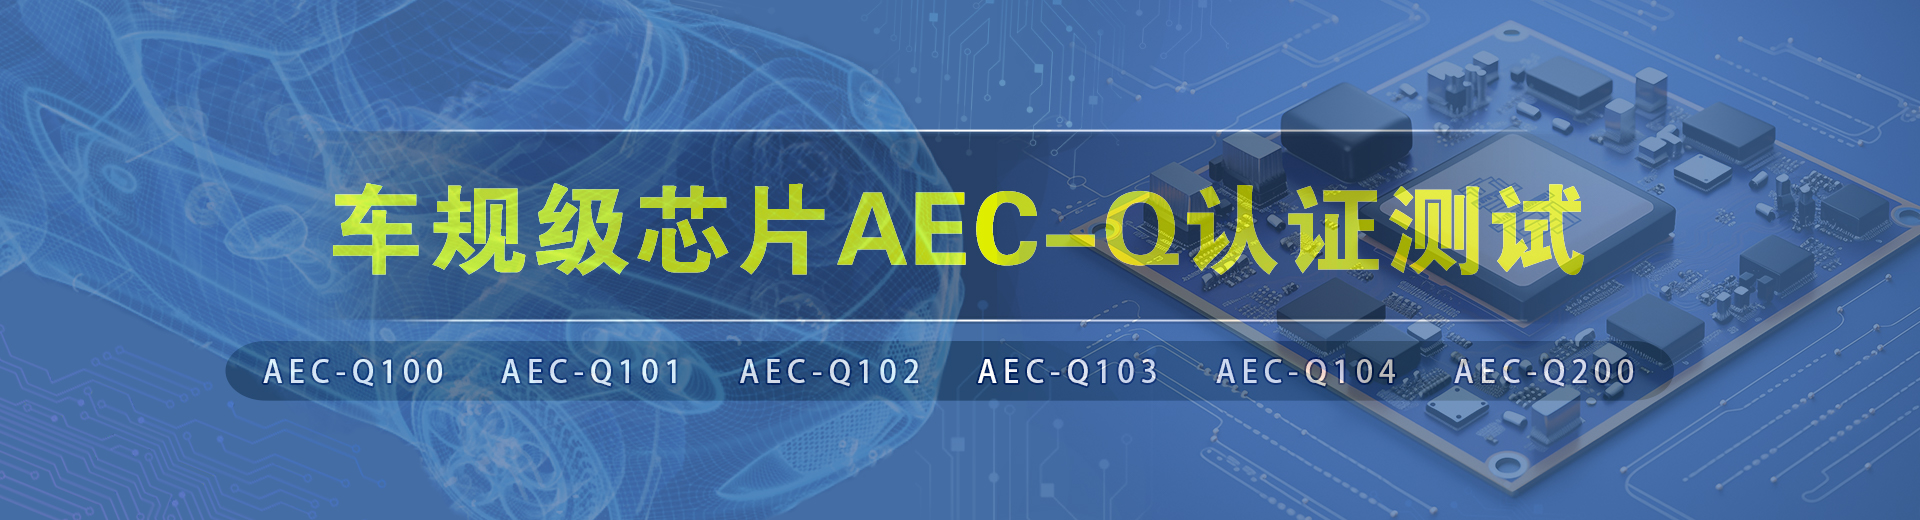 aec-q认证